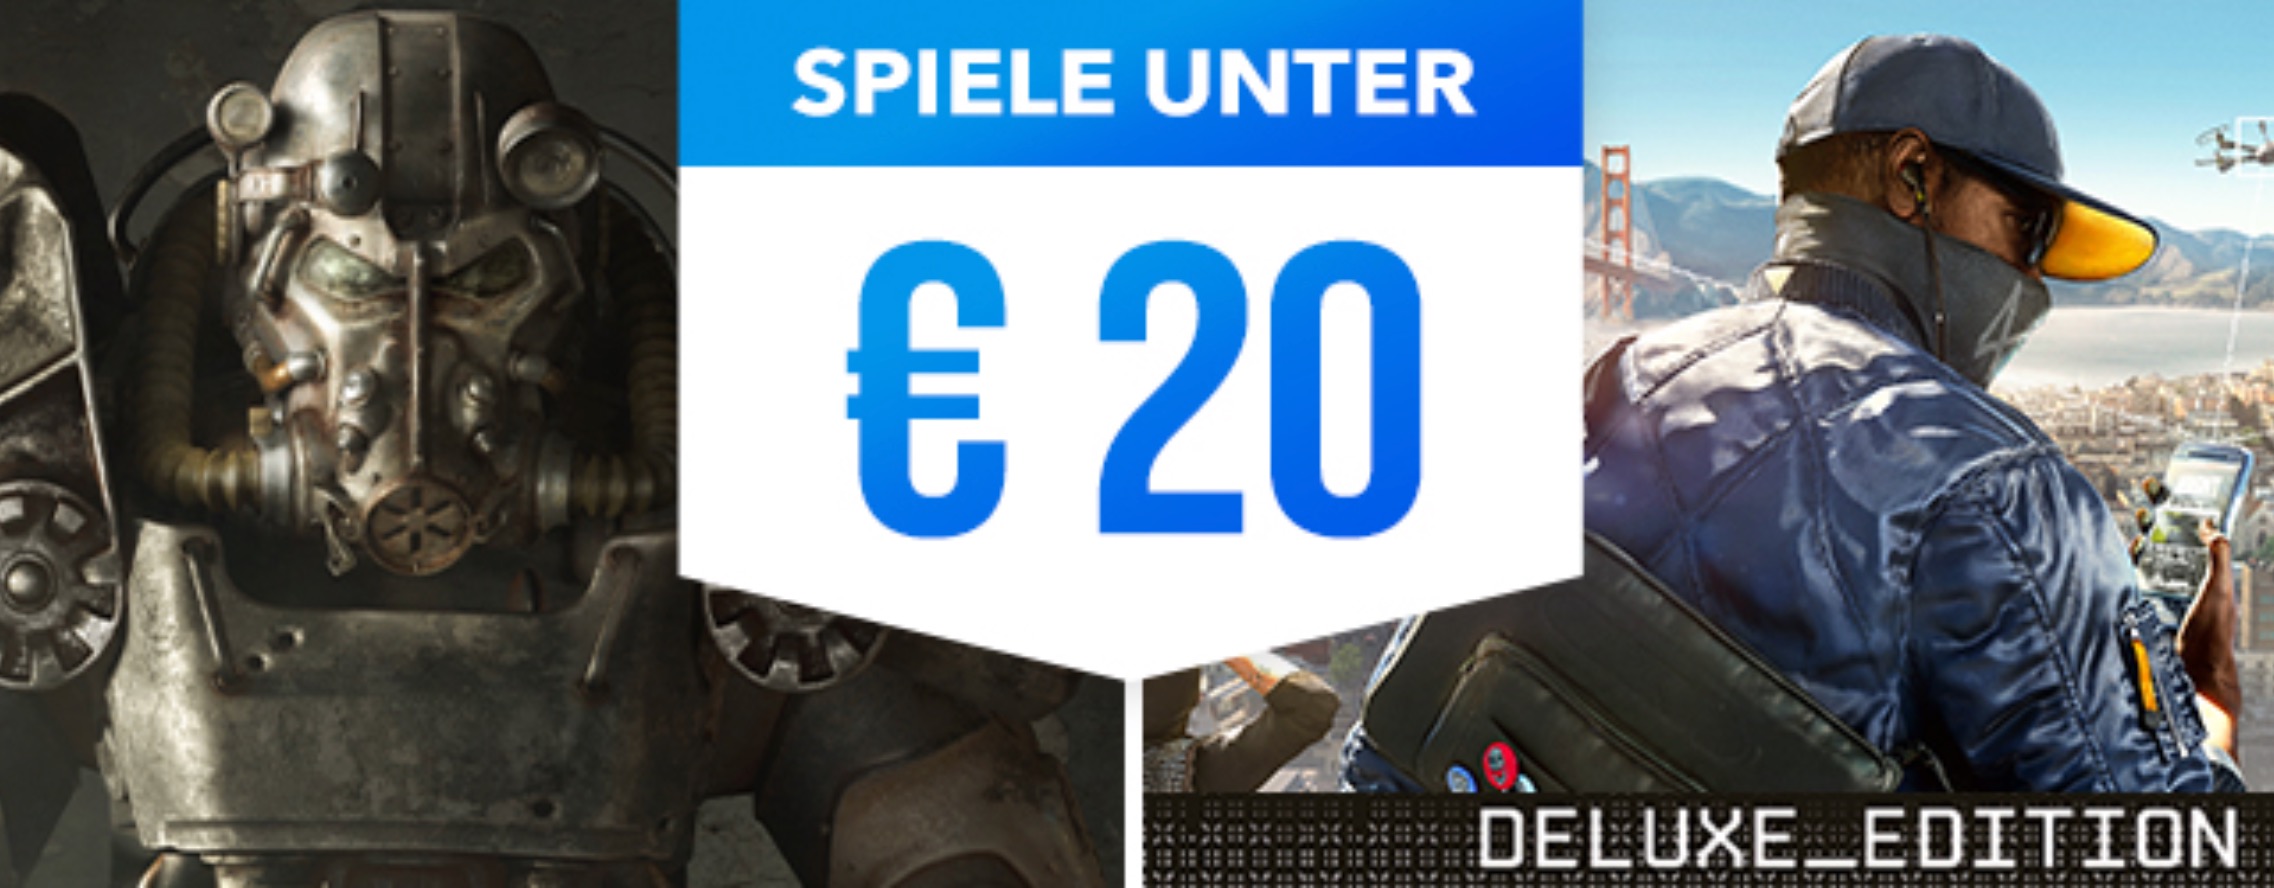 Neuer Sale im PS Store lockt mit PS4-Spielen unter 20€ – Das sind die Highlights